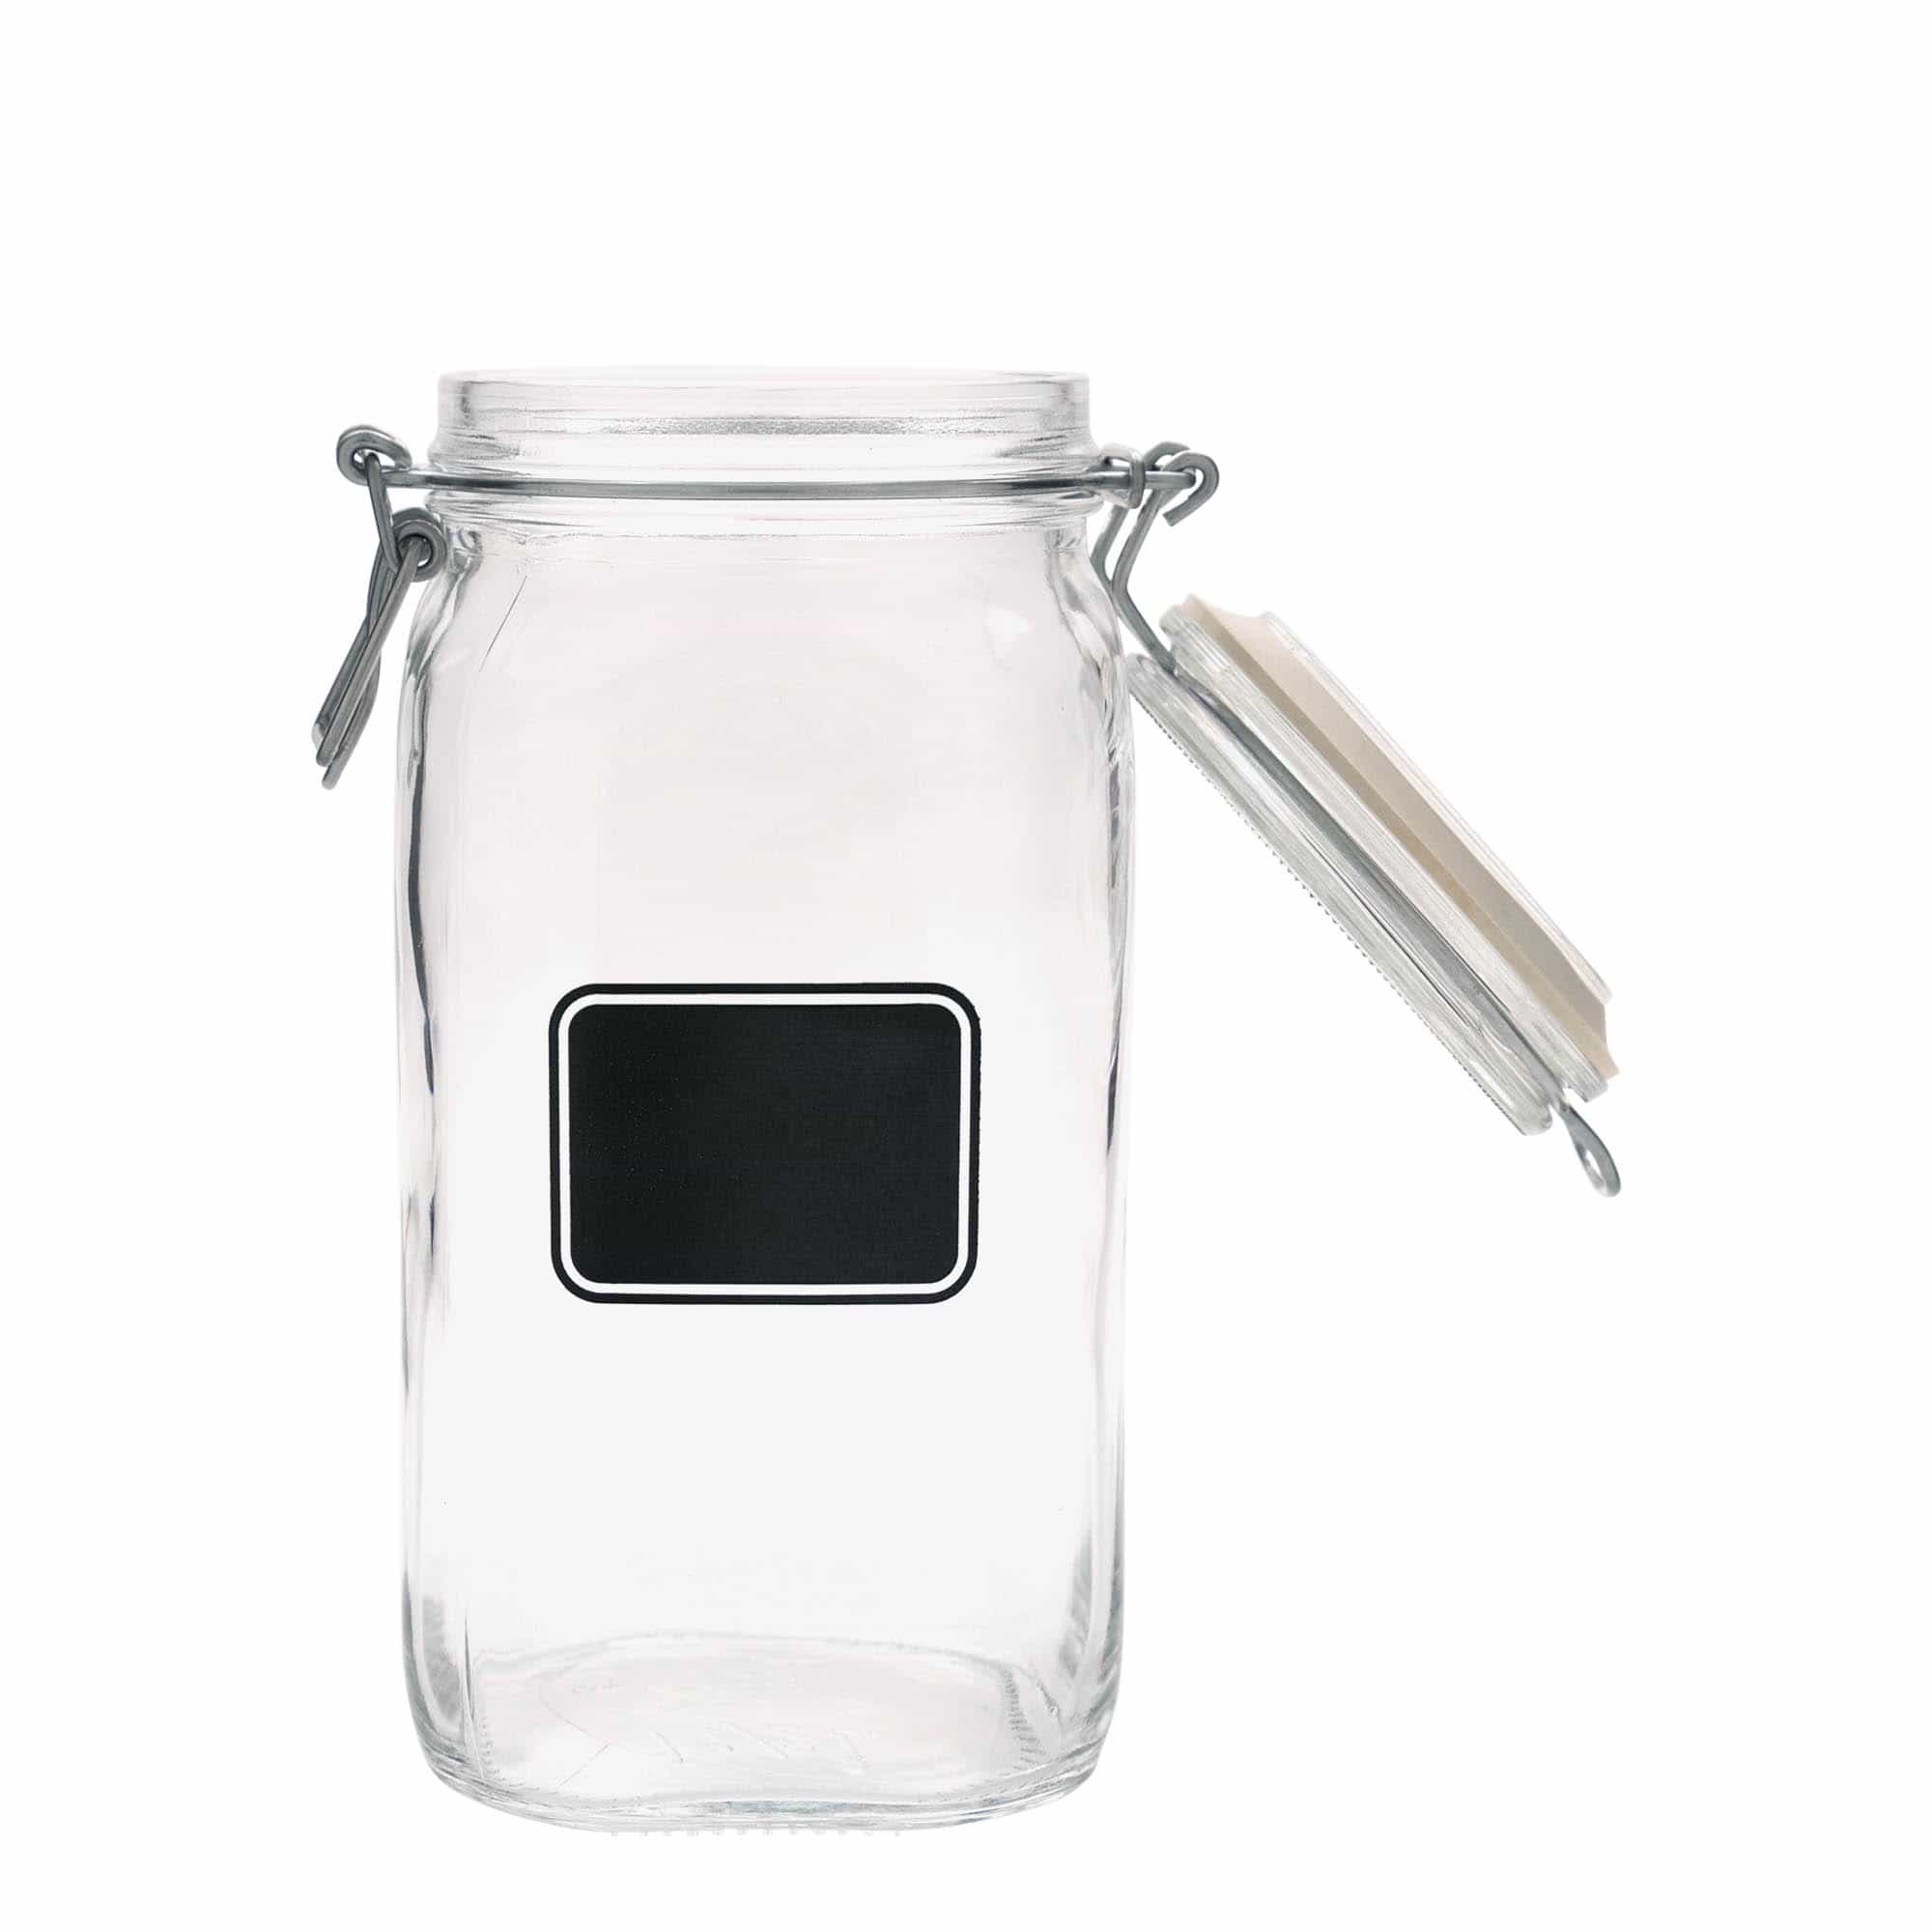 1500 ml-es fémcsatos üveg 'Fido', motívum: Címkemező, négyzet alakú, szájnyílás: fémcsatos zár